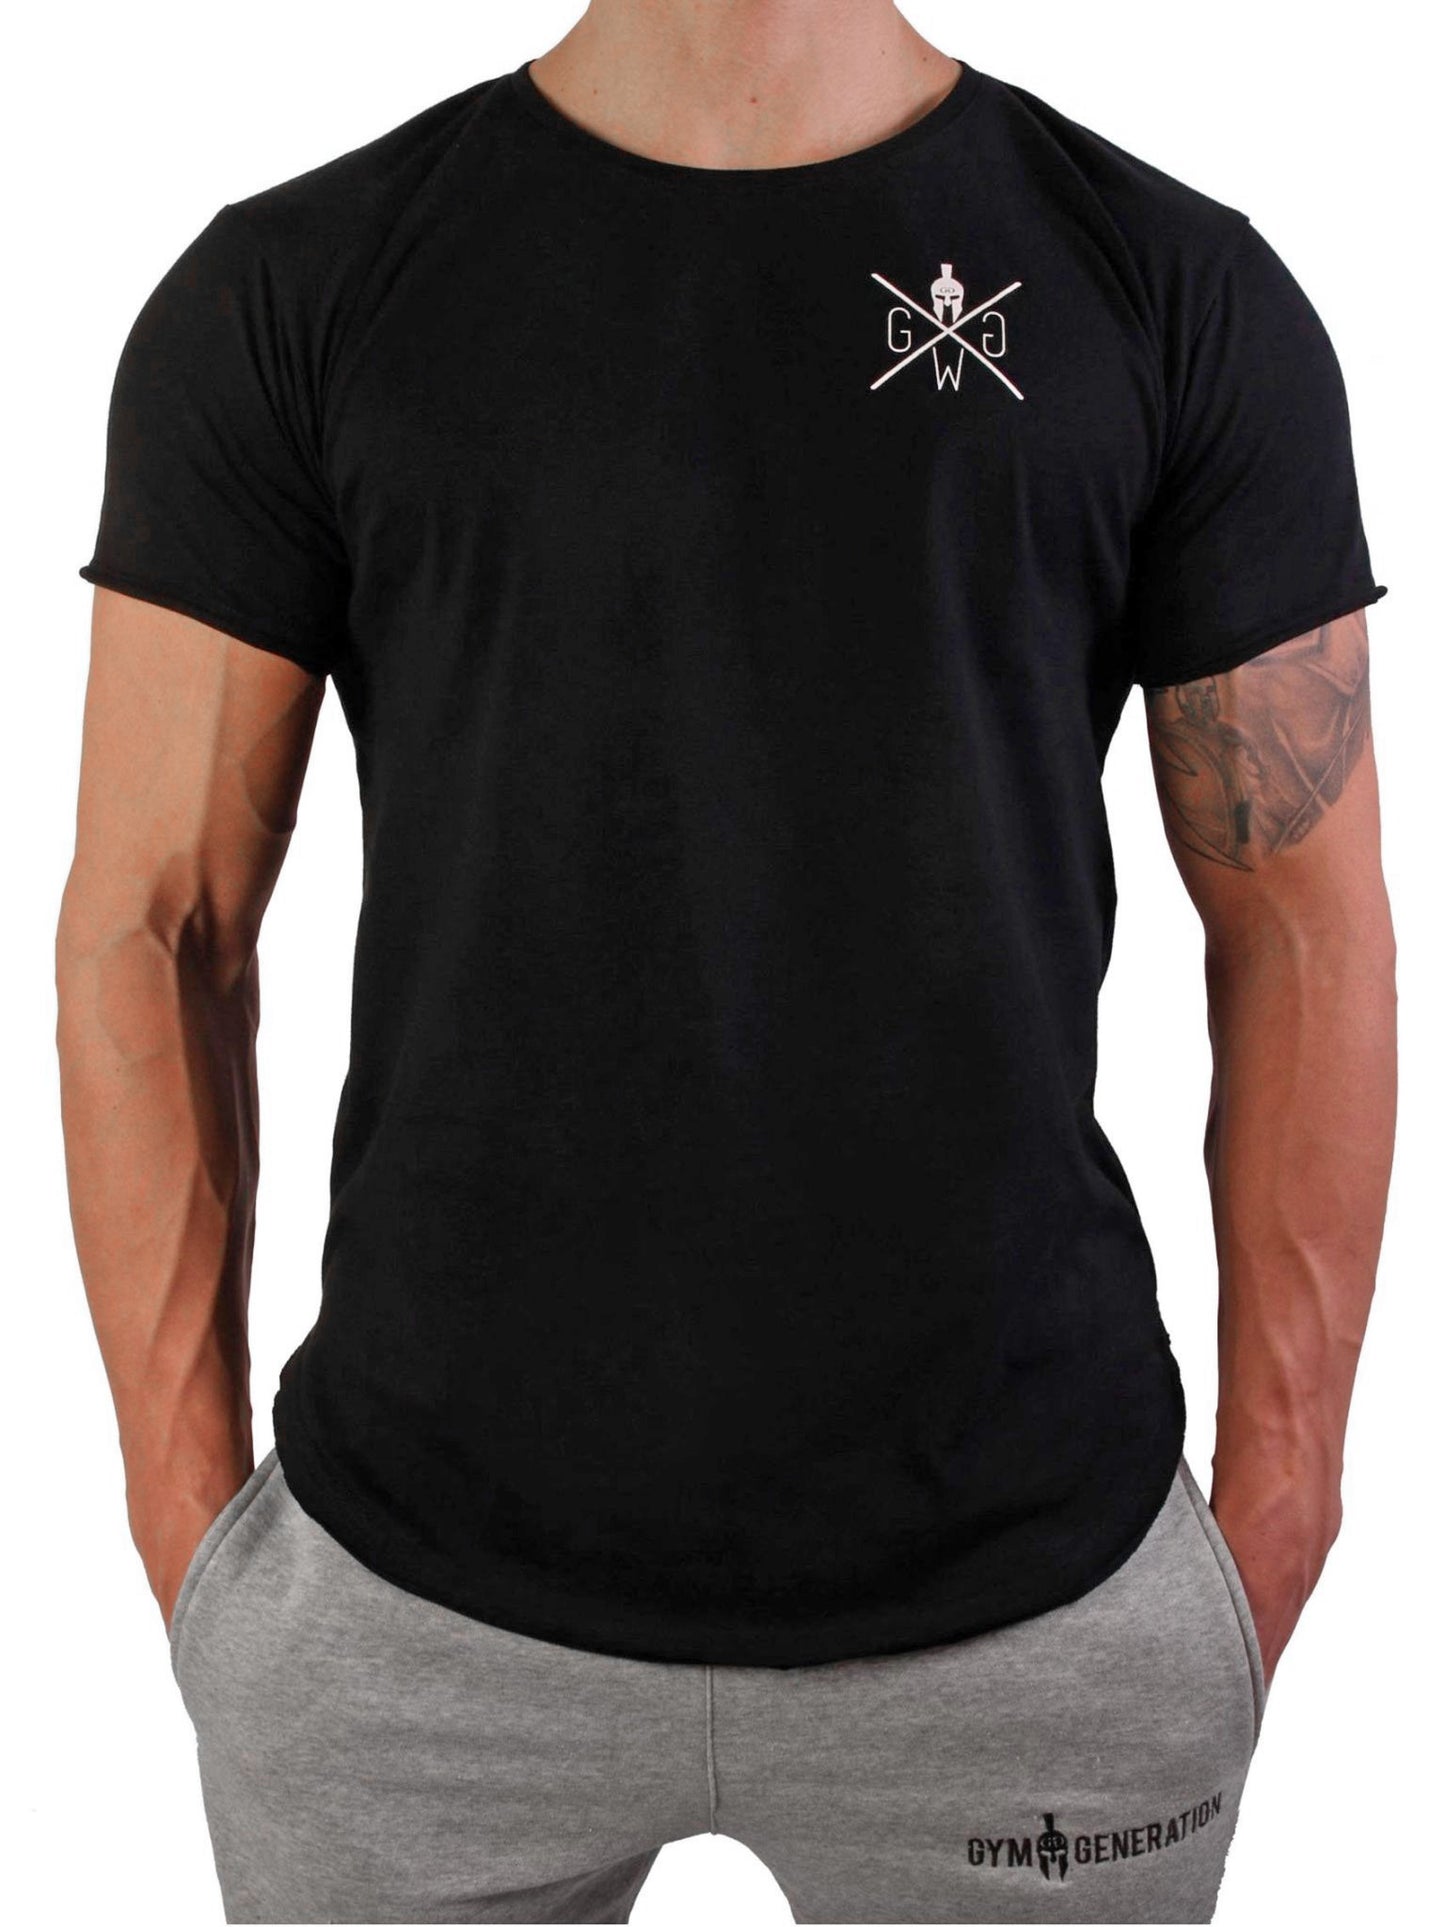 Schwarzes Herren T-Shirt von Gym Generation aus 100% Baumwolle mit dezentem Spartaner-Logo.